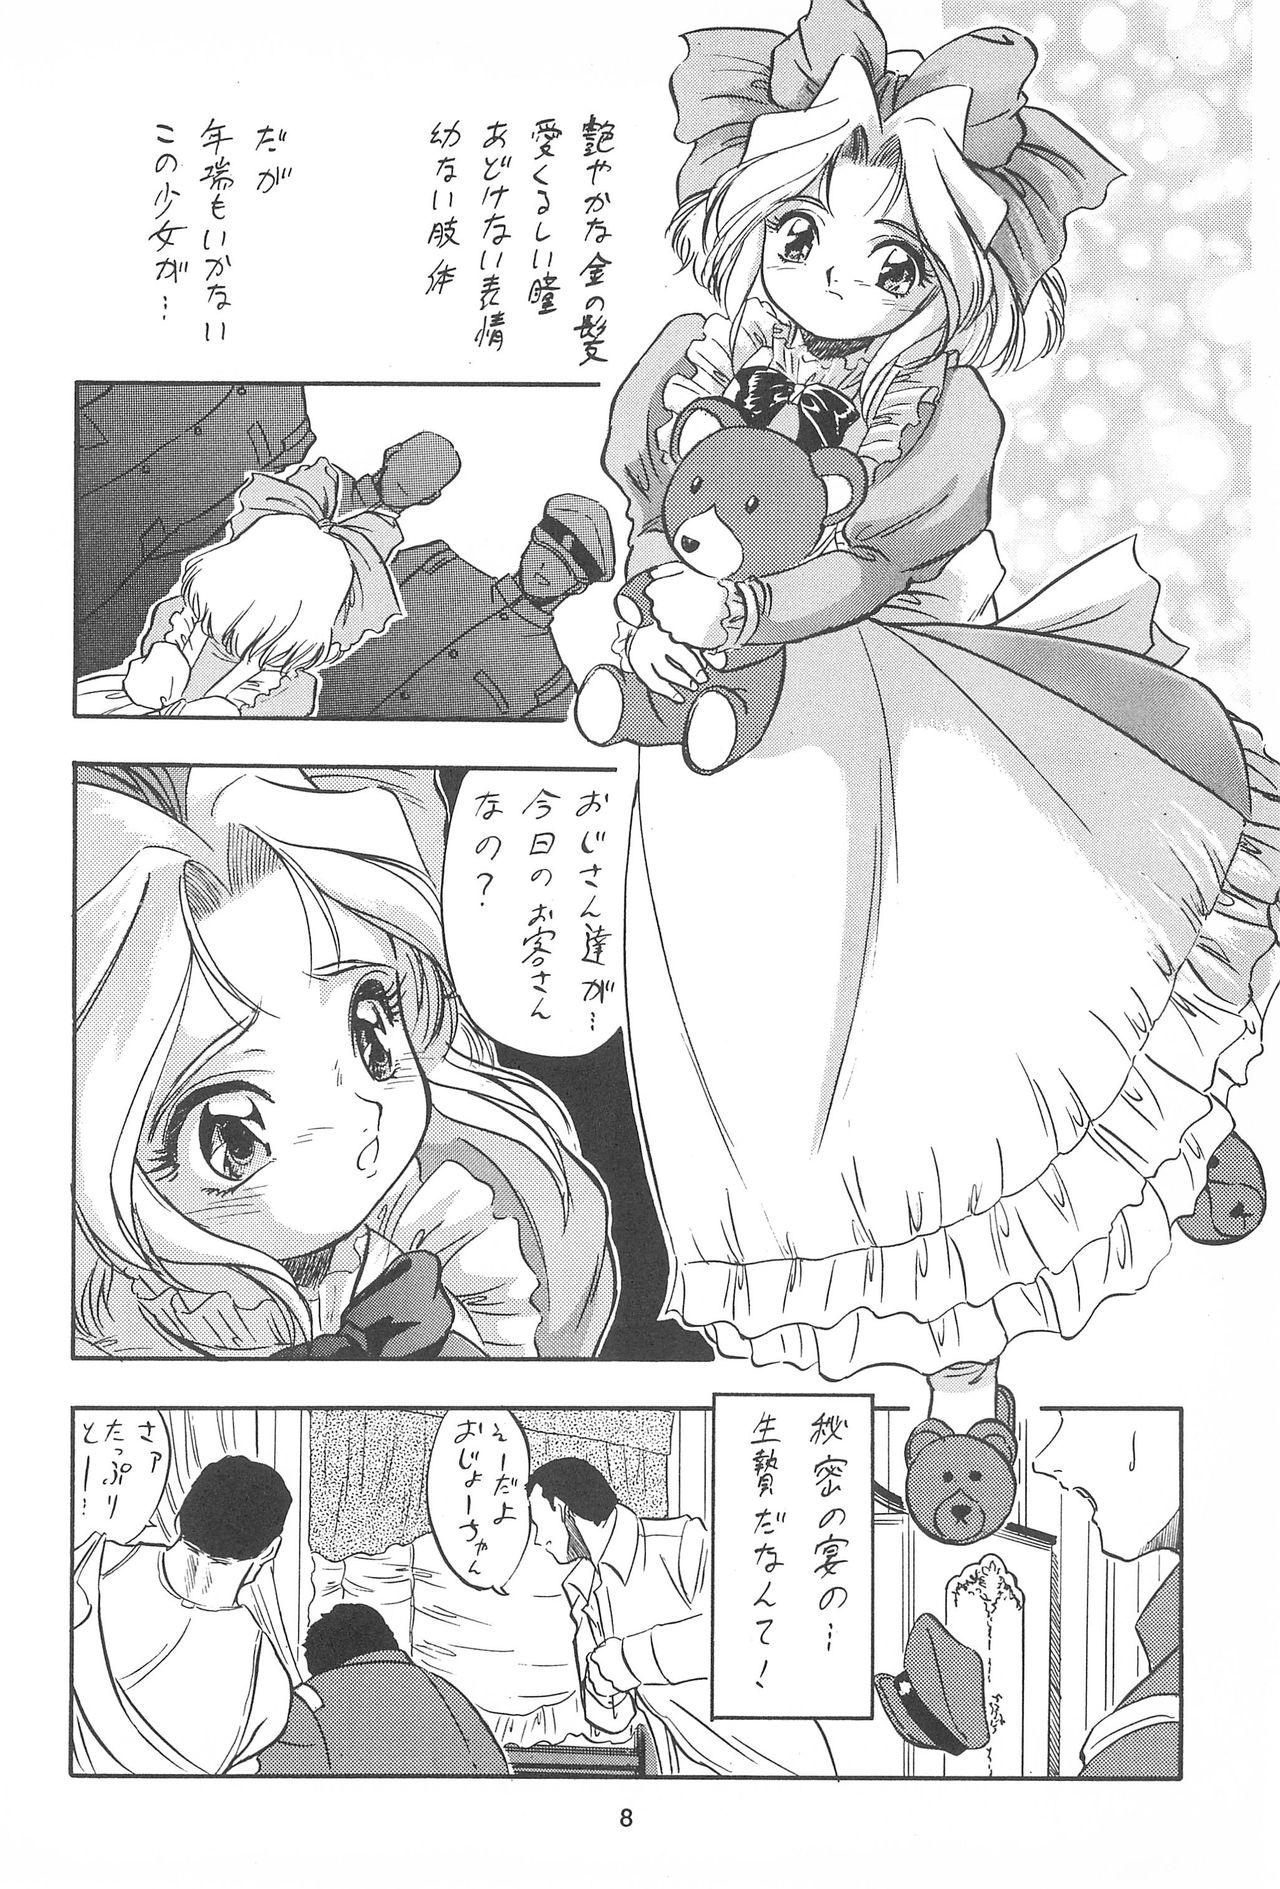 Hindi Sakura ja Nai Moon!! Character Voice Tange Sakura - Cardcaptor sakura Sakura taisen Scene - Page 8